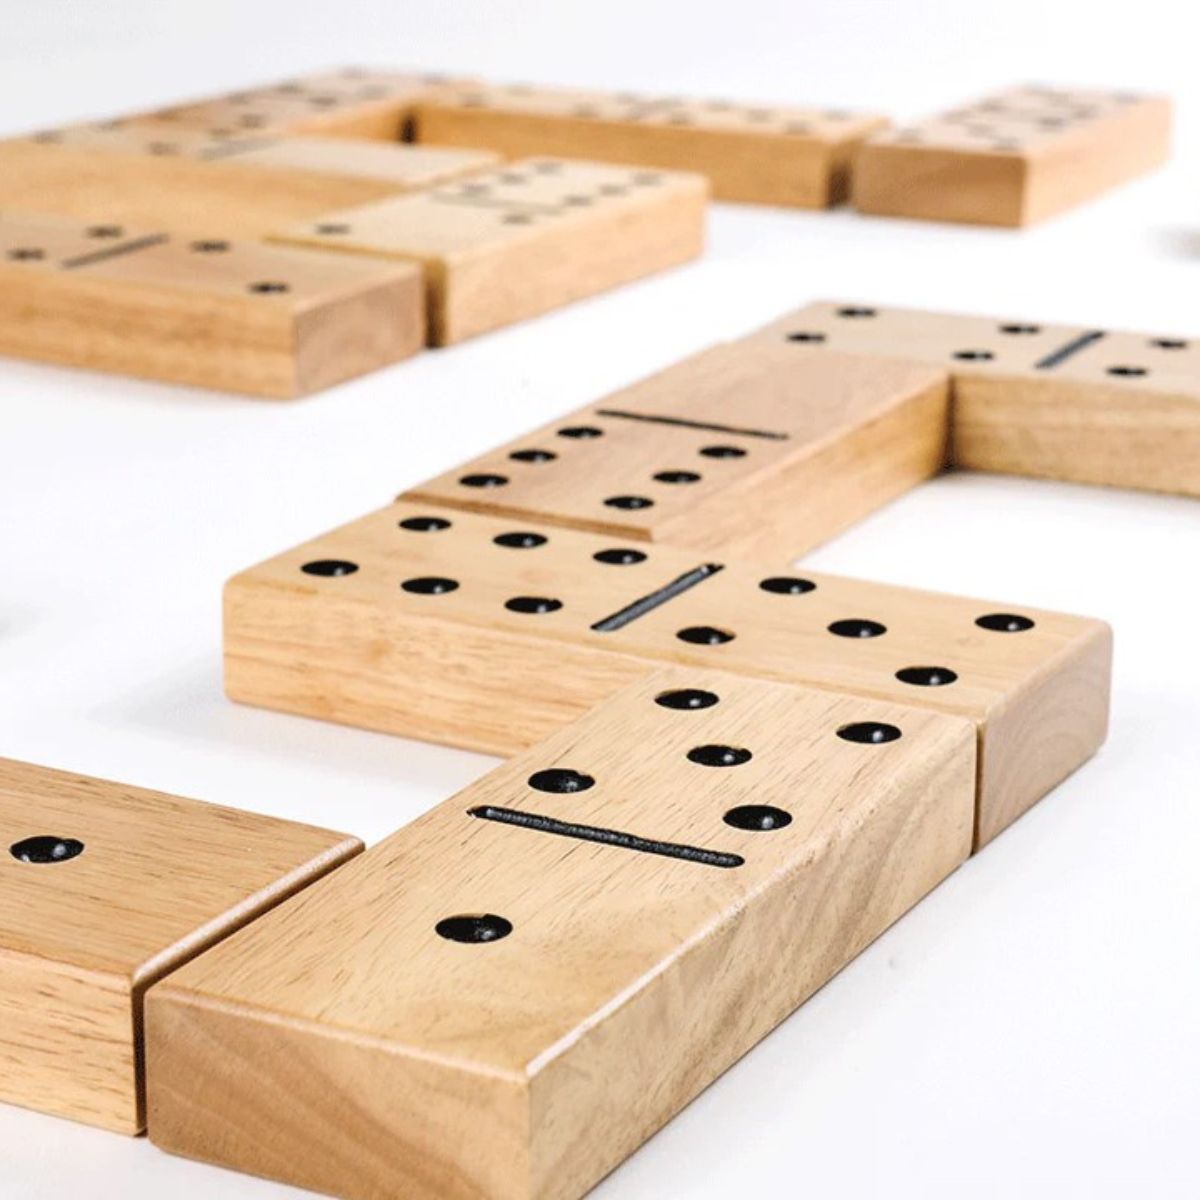 Wooden Dominoes